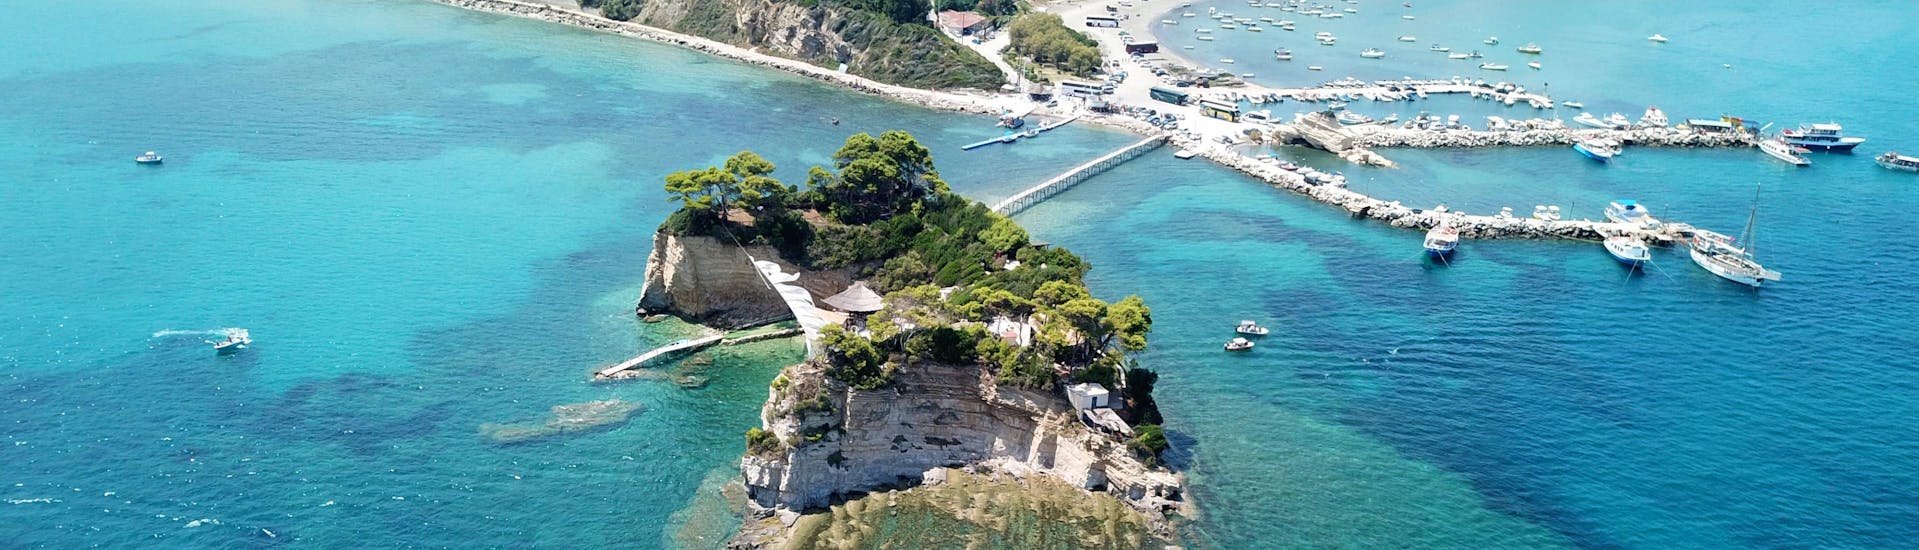 Vista dall'alto della baia di Laganas, Zante, con il ponte di legno per l'isola di Cameo. 